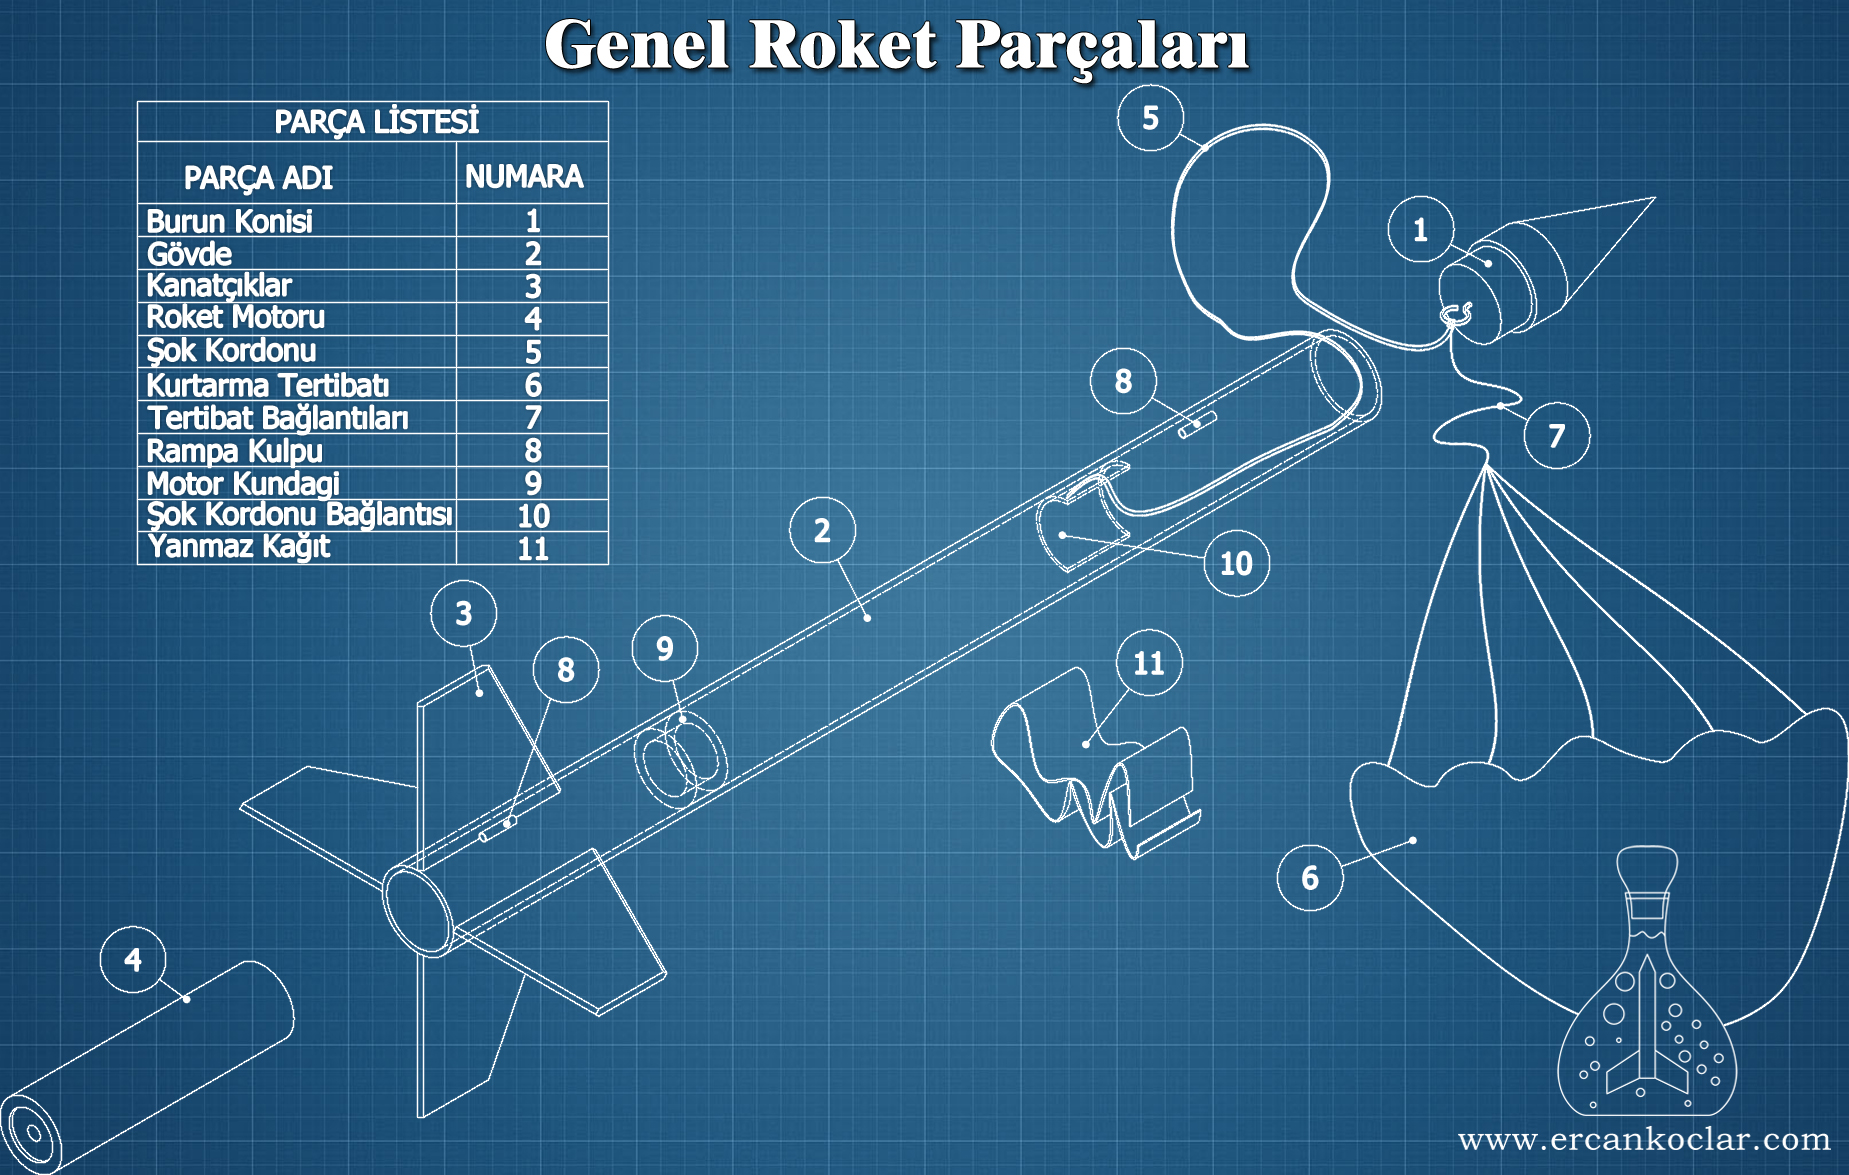 Genel-Roket-Parcalari